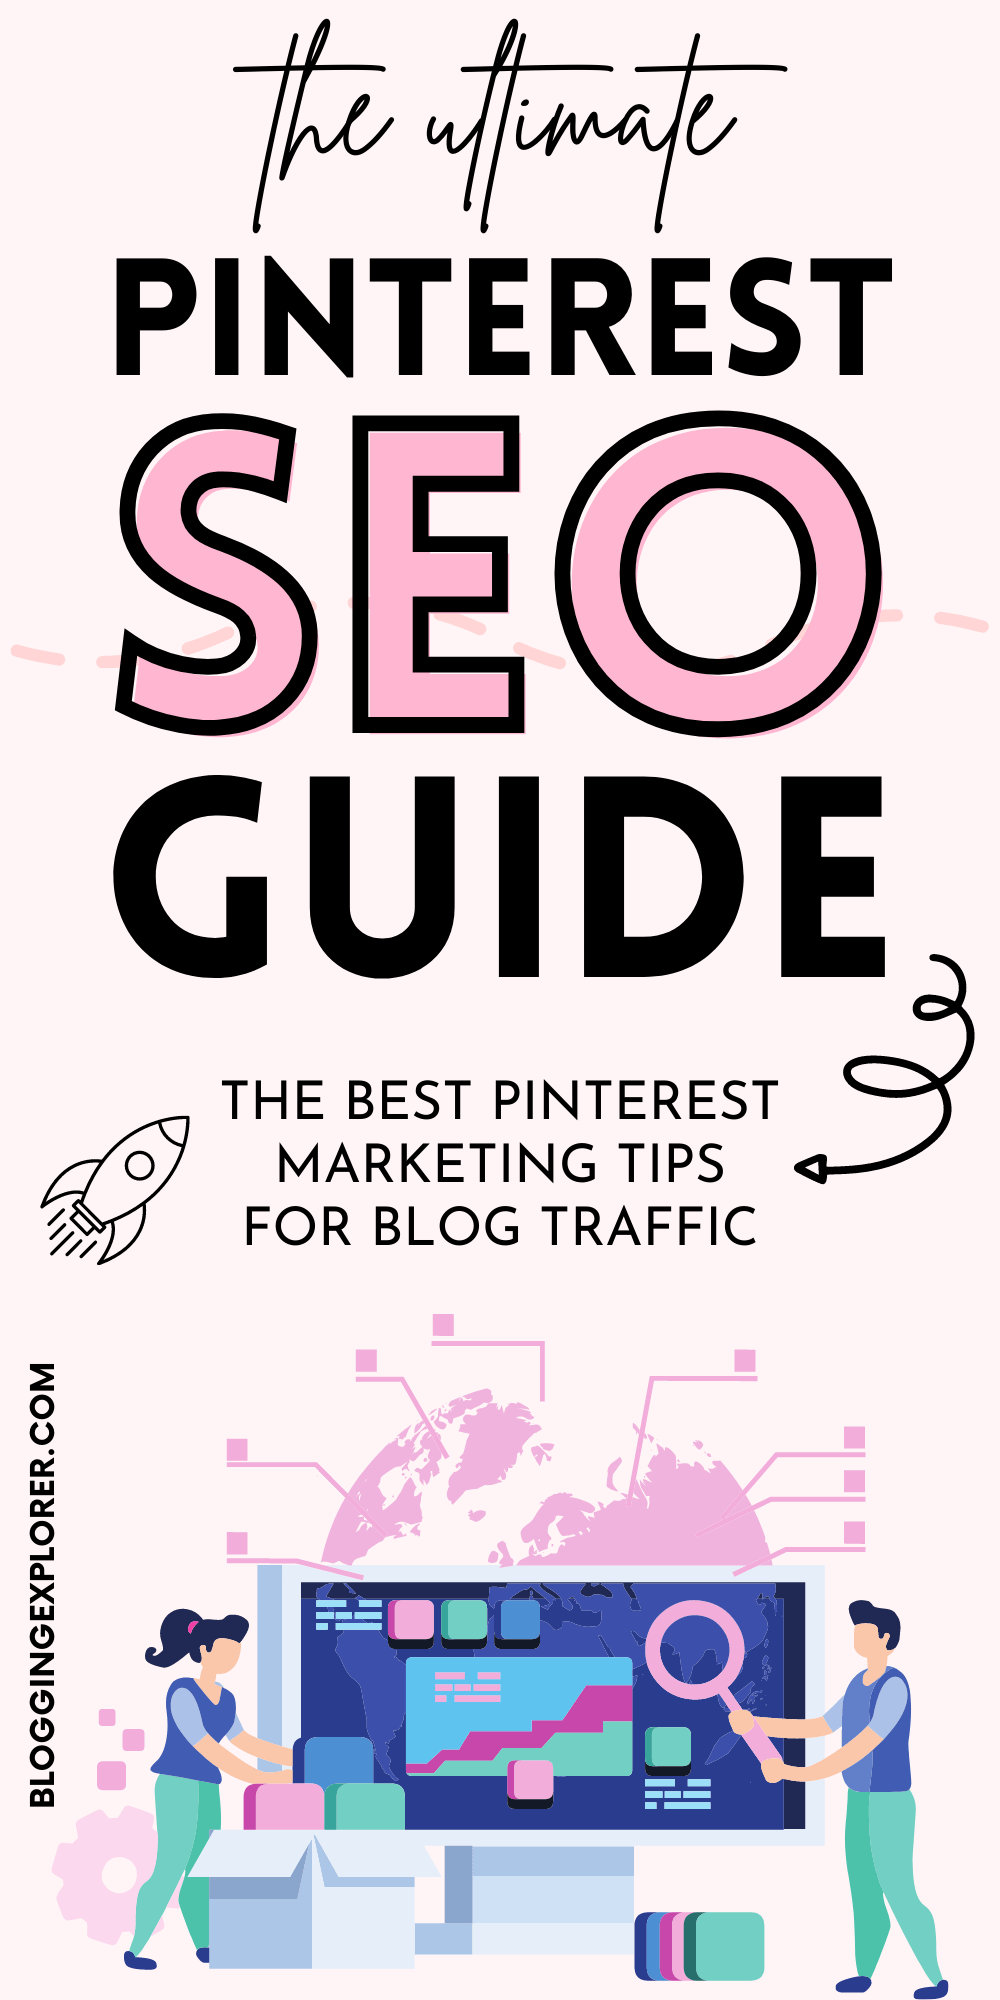 The ultimate Pinterest SEO guide - Pinterest marketing tips for blog traffic